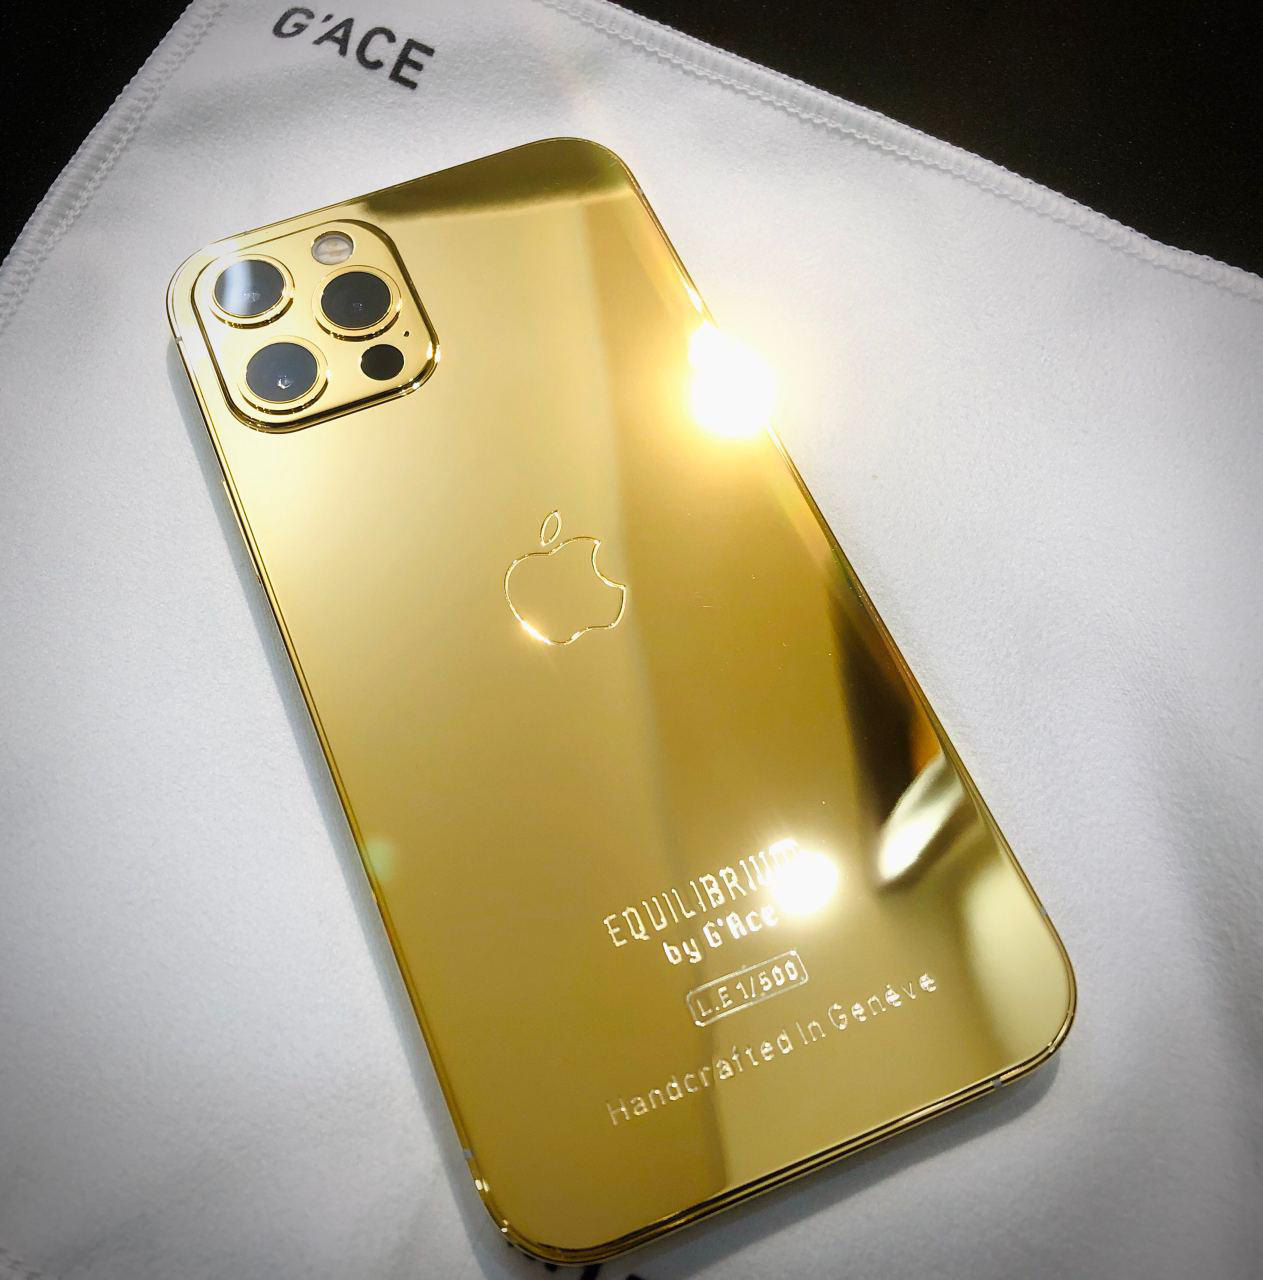 iPhone 12 mạ vàng Việt Nam là một trong những phiên bản độc đáo và đẳng cấp nhất trên thị trường. Với lớp mạ vàng được thực hiện bởi các thợ lành nghề tại Việt Nam, chiếc điện thoại sẽ tạo nên sự khác biệt hoàn toàn cho phong cách của bạn.